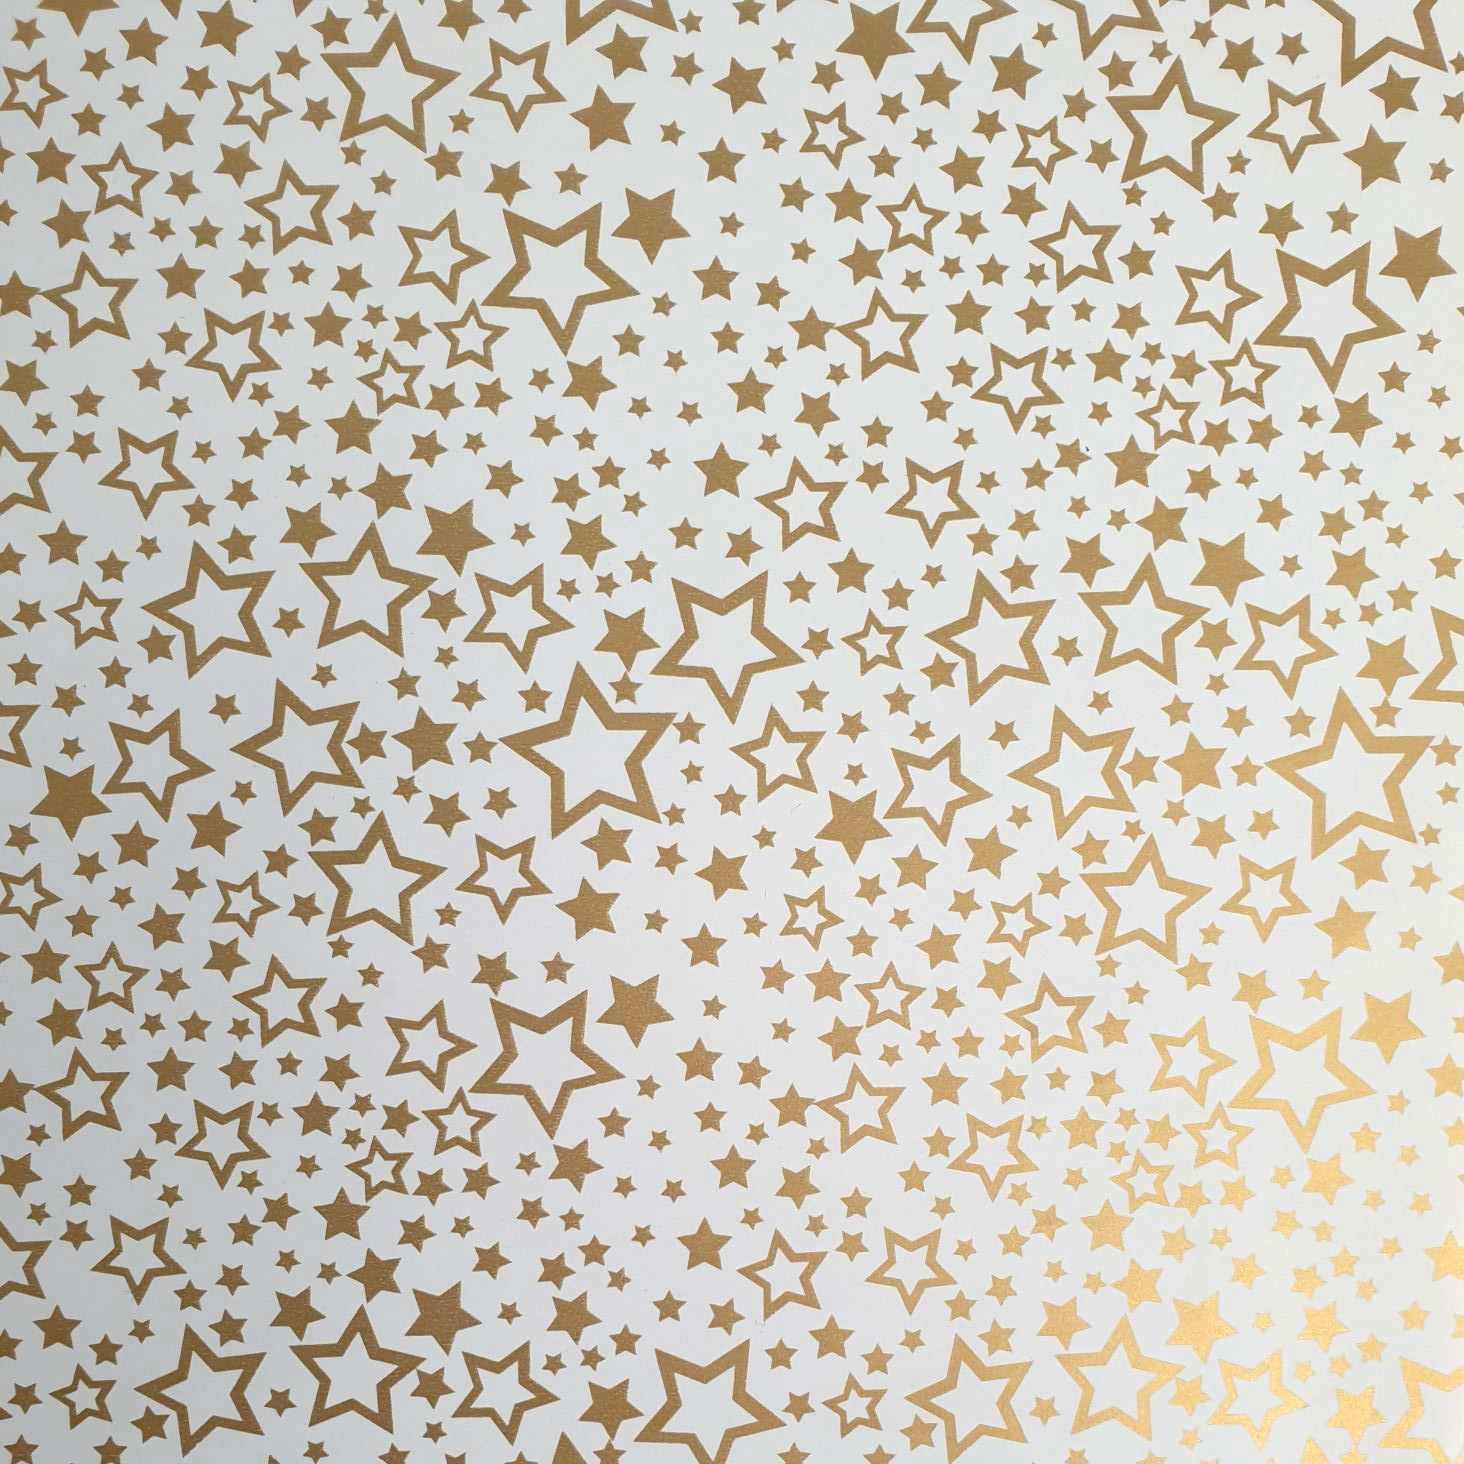 Star Geschenkpapier, Geschenkpapier Sterne / Rolle 70cm Muster 2m x gold weiß